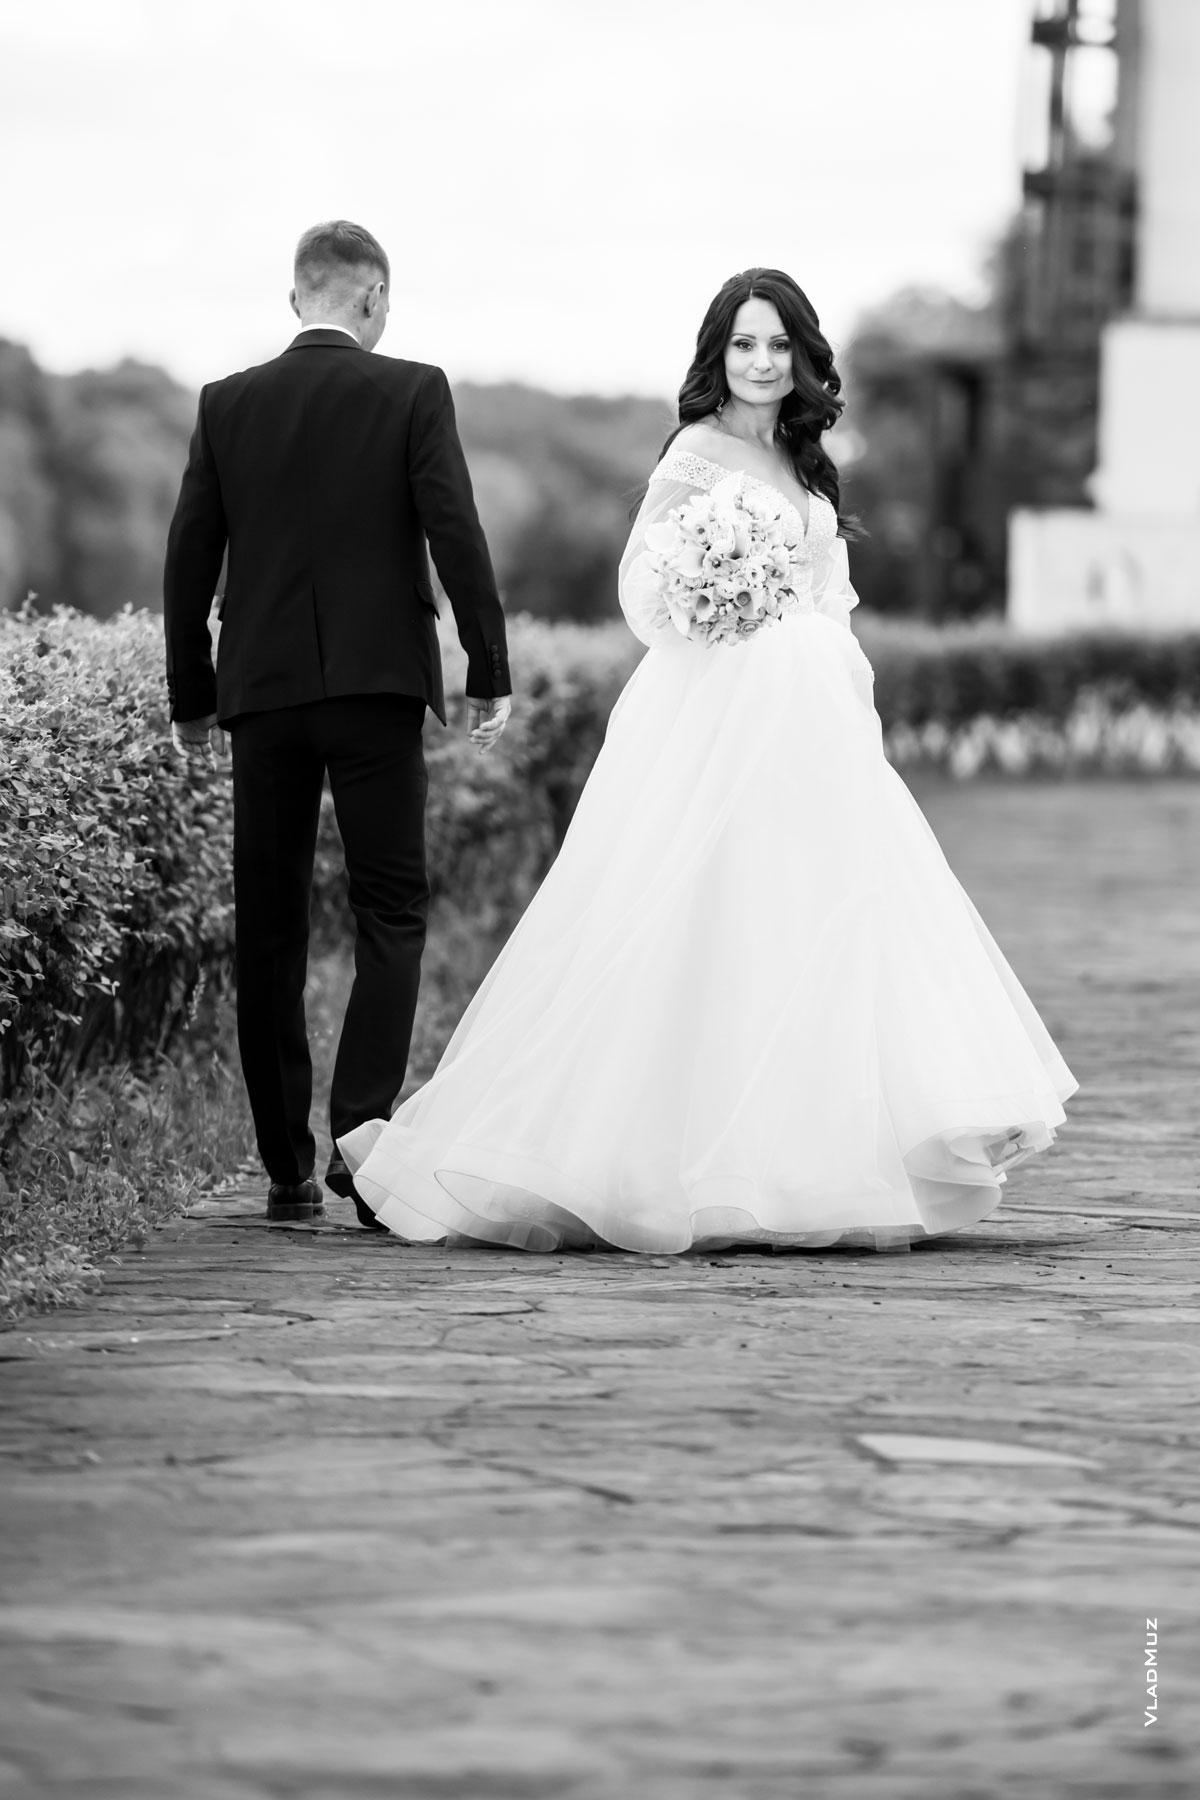 Ч/б фото во время свадебной прогулки: жених идет, невеста обернулась